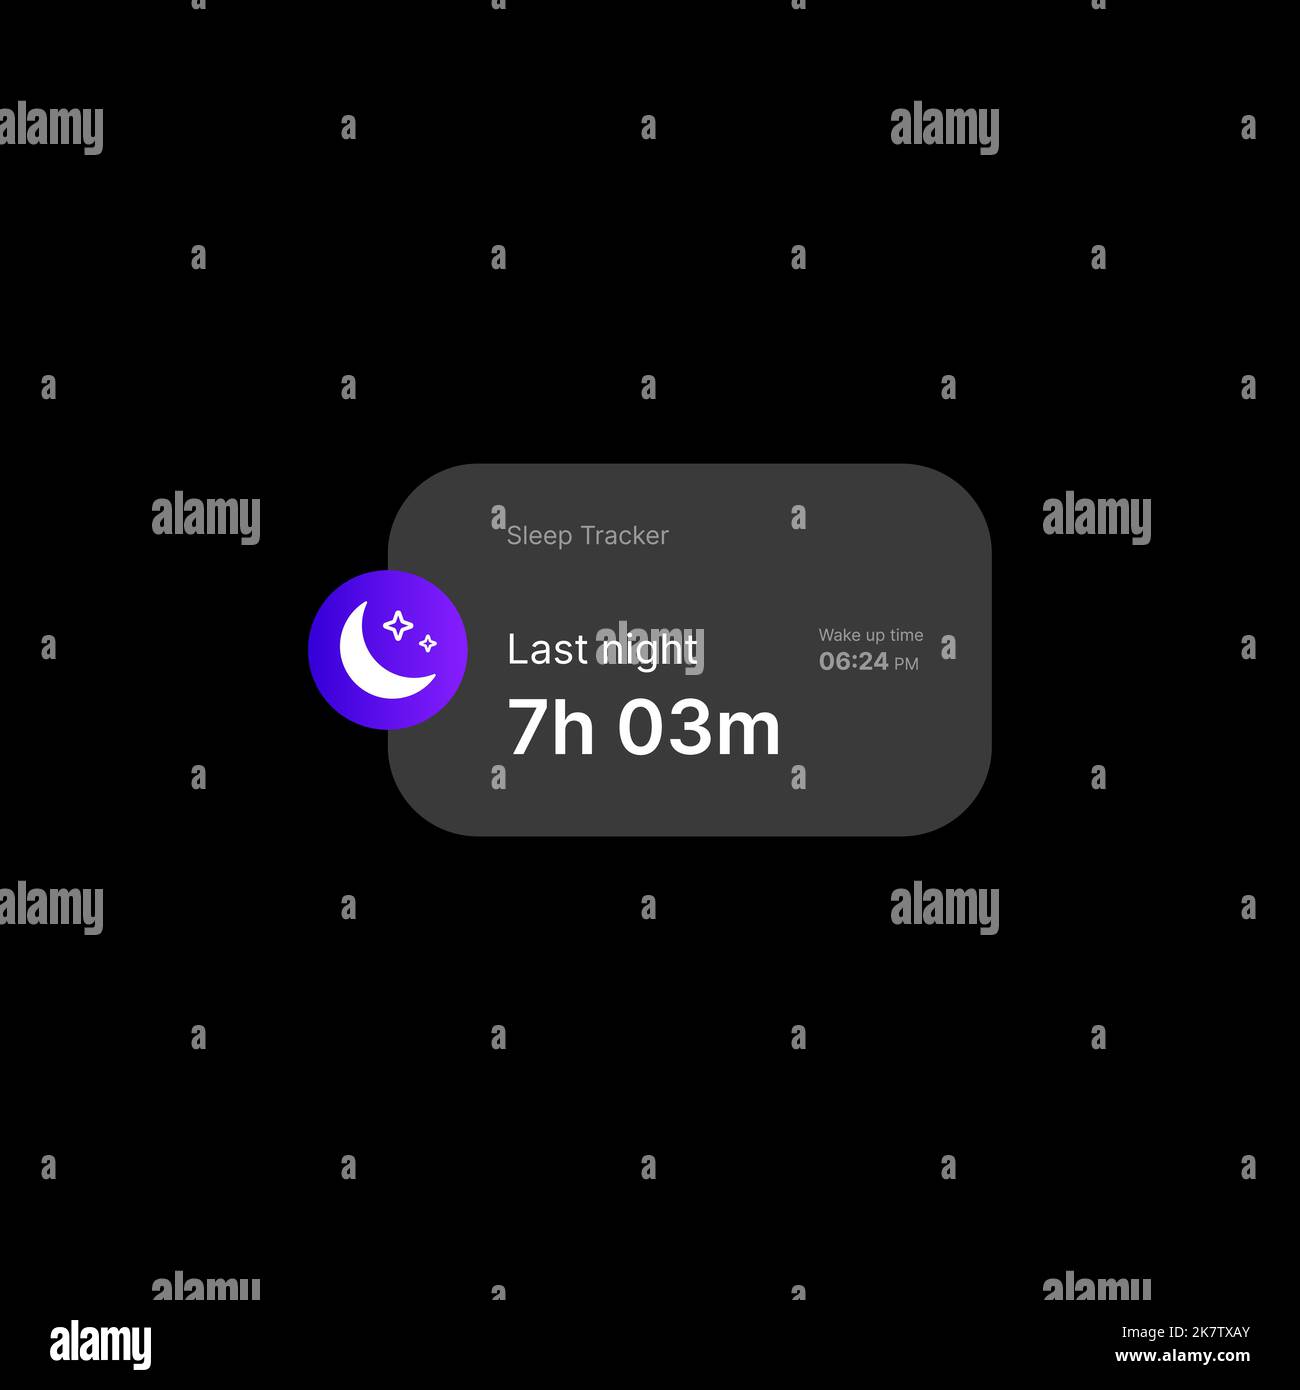 Sleep Tracker Widget UI-Konzept auf schwarzem Hintergrund. Illustration Zu Sozialen Medien. Editierbares Sleep Tracker-Symbol mit Stundenzähler und Weckzeit. Web-Element für mobile Anwendungen. Vektorgrafik Stock Vektor